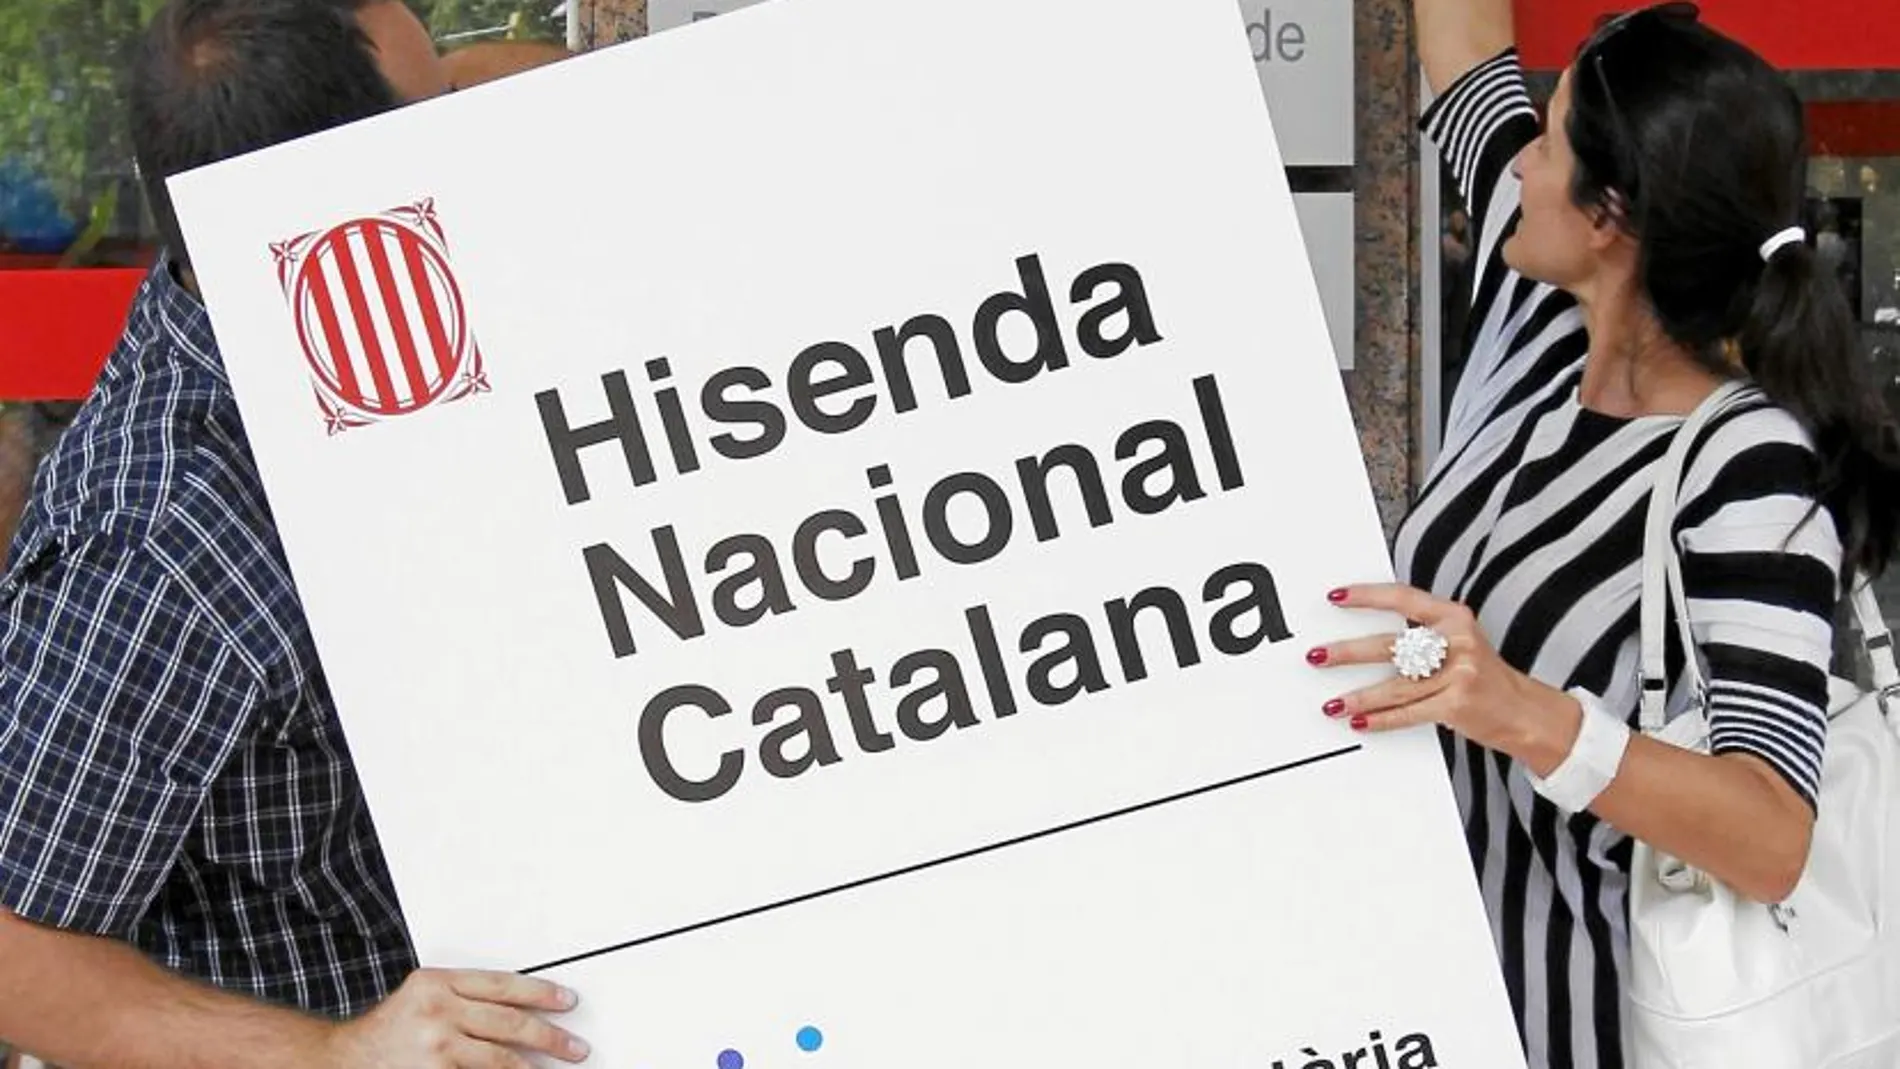 Un cartel reivindicativo de la Hacienda Nacional Catalana frente a la Agencia Tributaria estatal